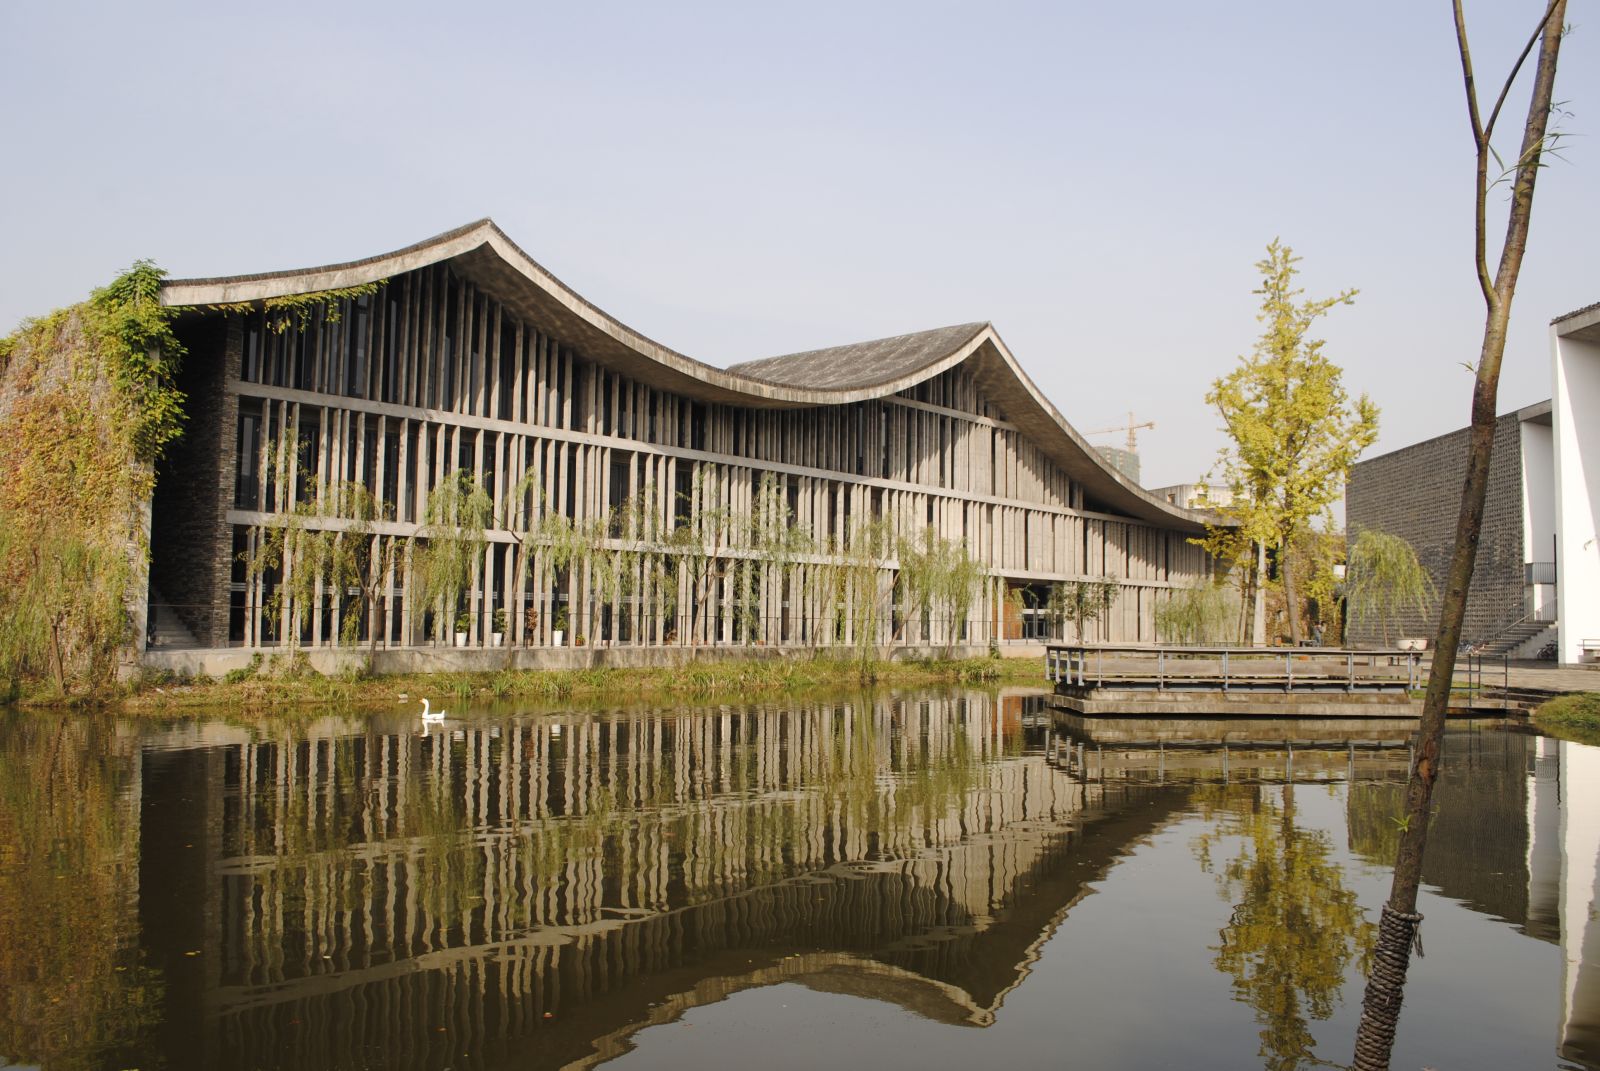 屋顶绿化大会技术考察:中国美术学院象山校区